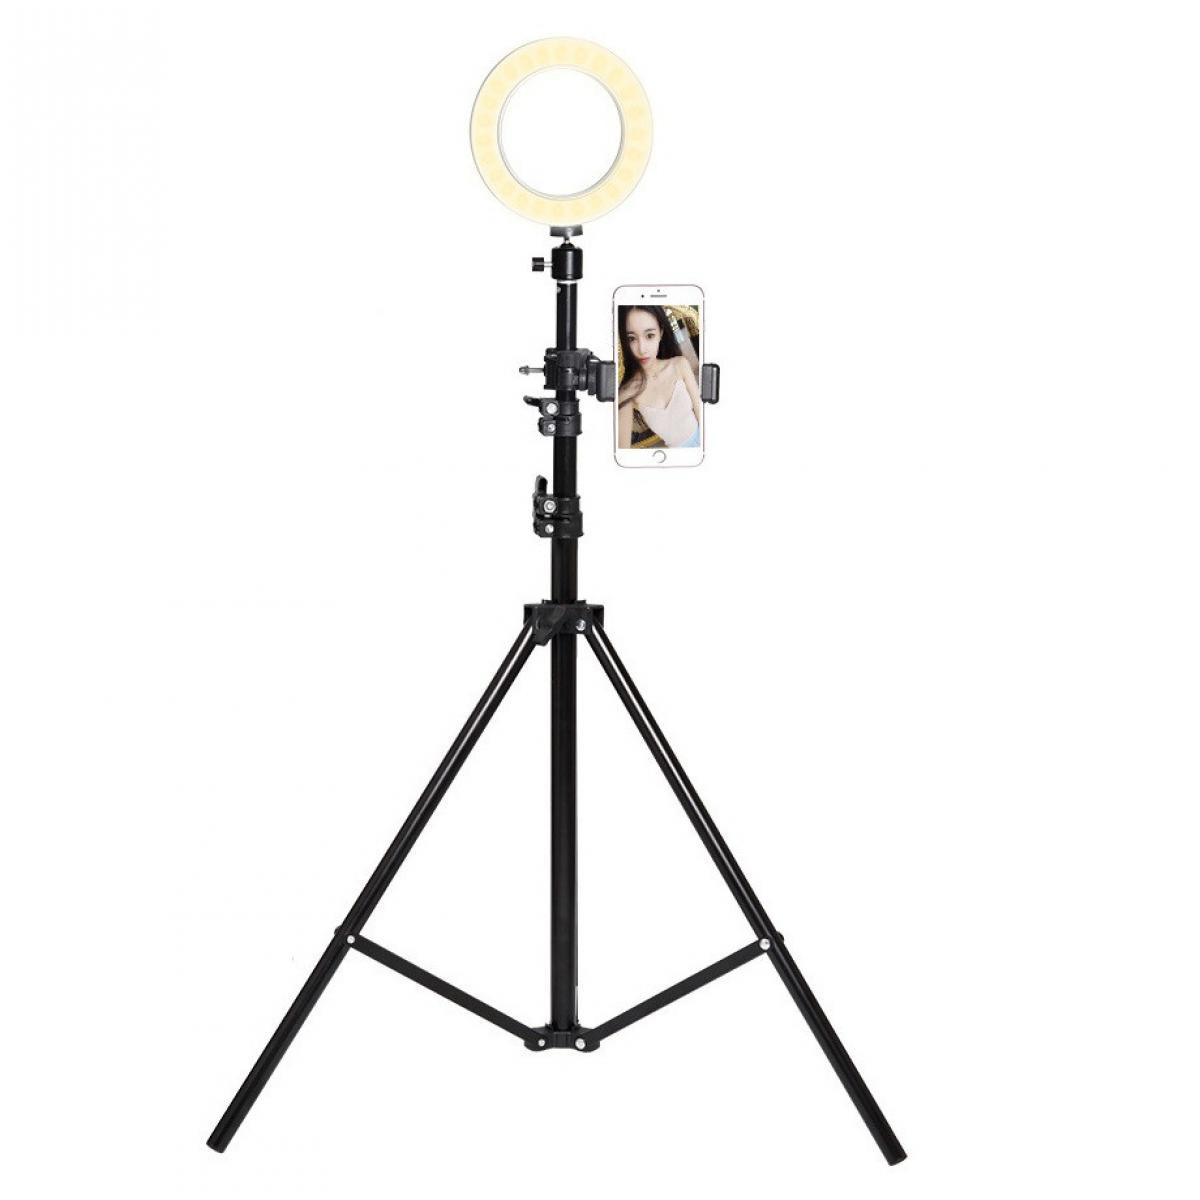 Shot - Trepied Telescopique avec Flash pour HUAWEI P30 lite XL Smartphone Reglable Photo (NOIR) - Autres accessoires smartphone